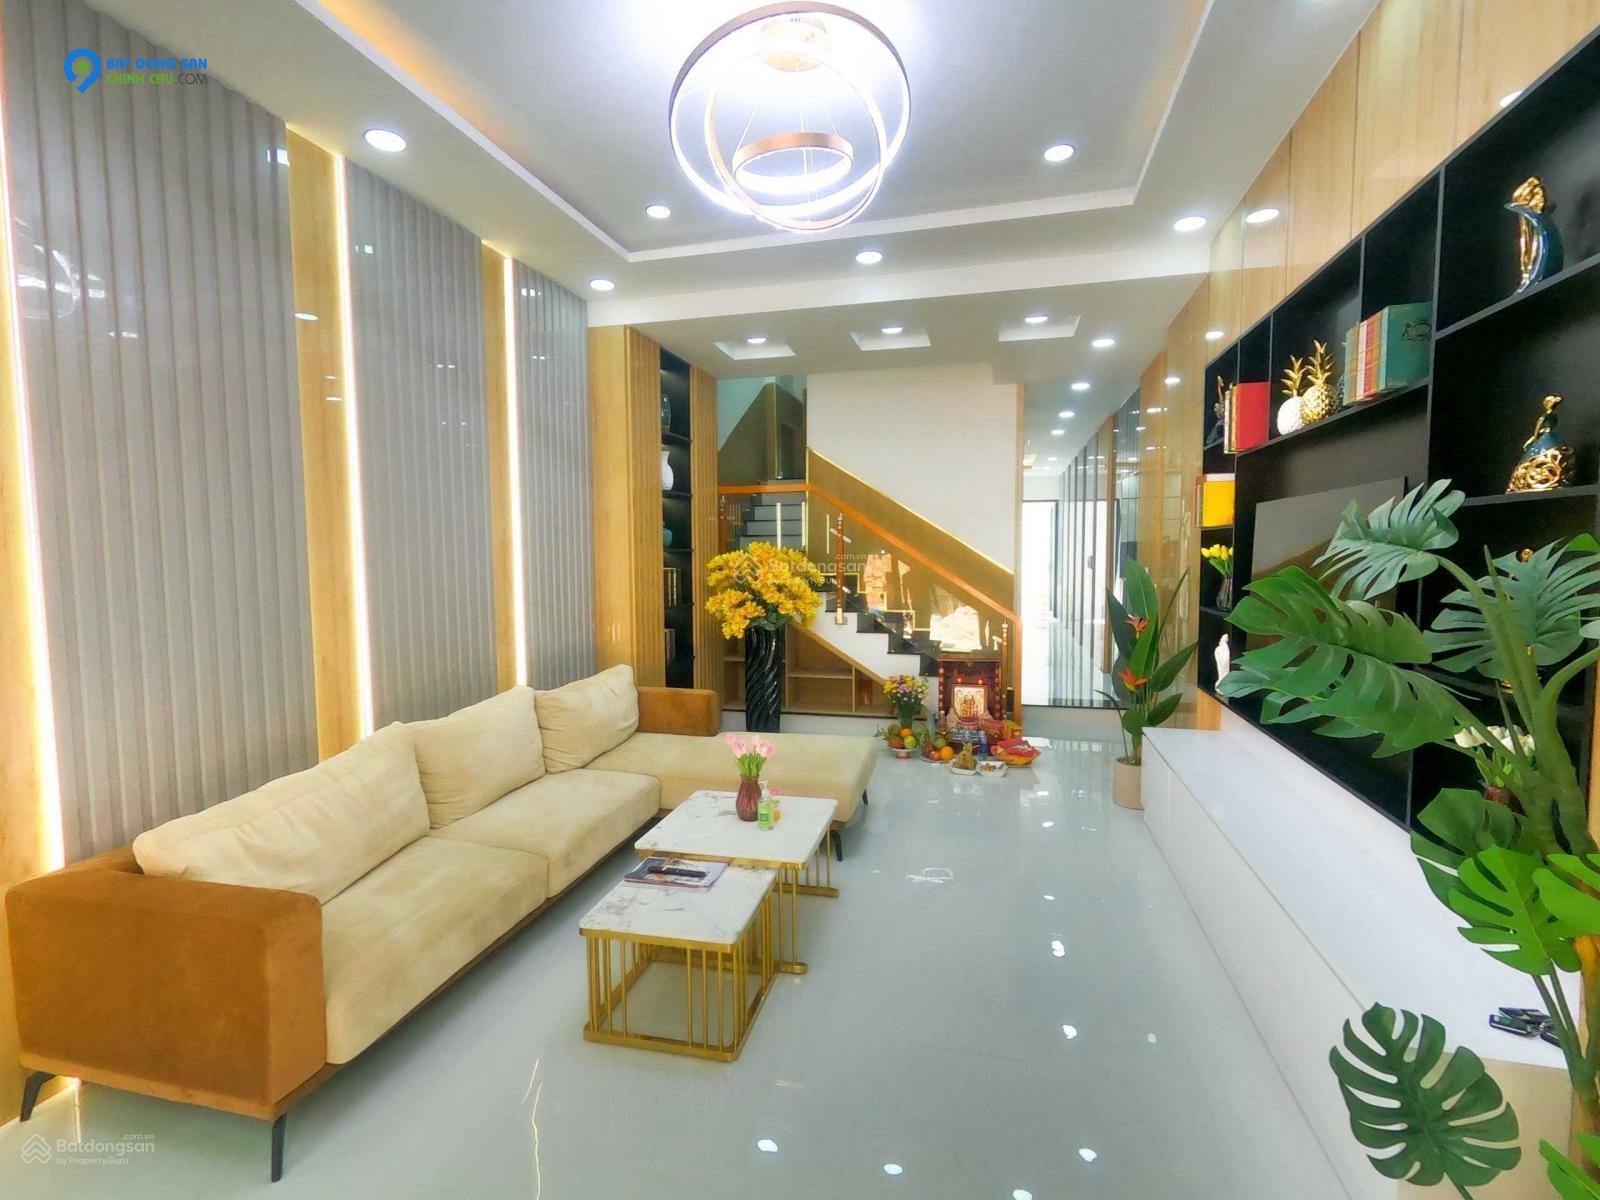 CC Thu Trang  bán  nhà Nguyễn  Thái Sơn 70m2, 4 tầng BTCT hẻm 12 m, chỉ 6,5 tỷ.